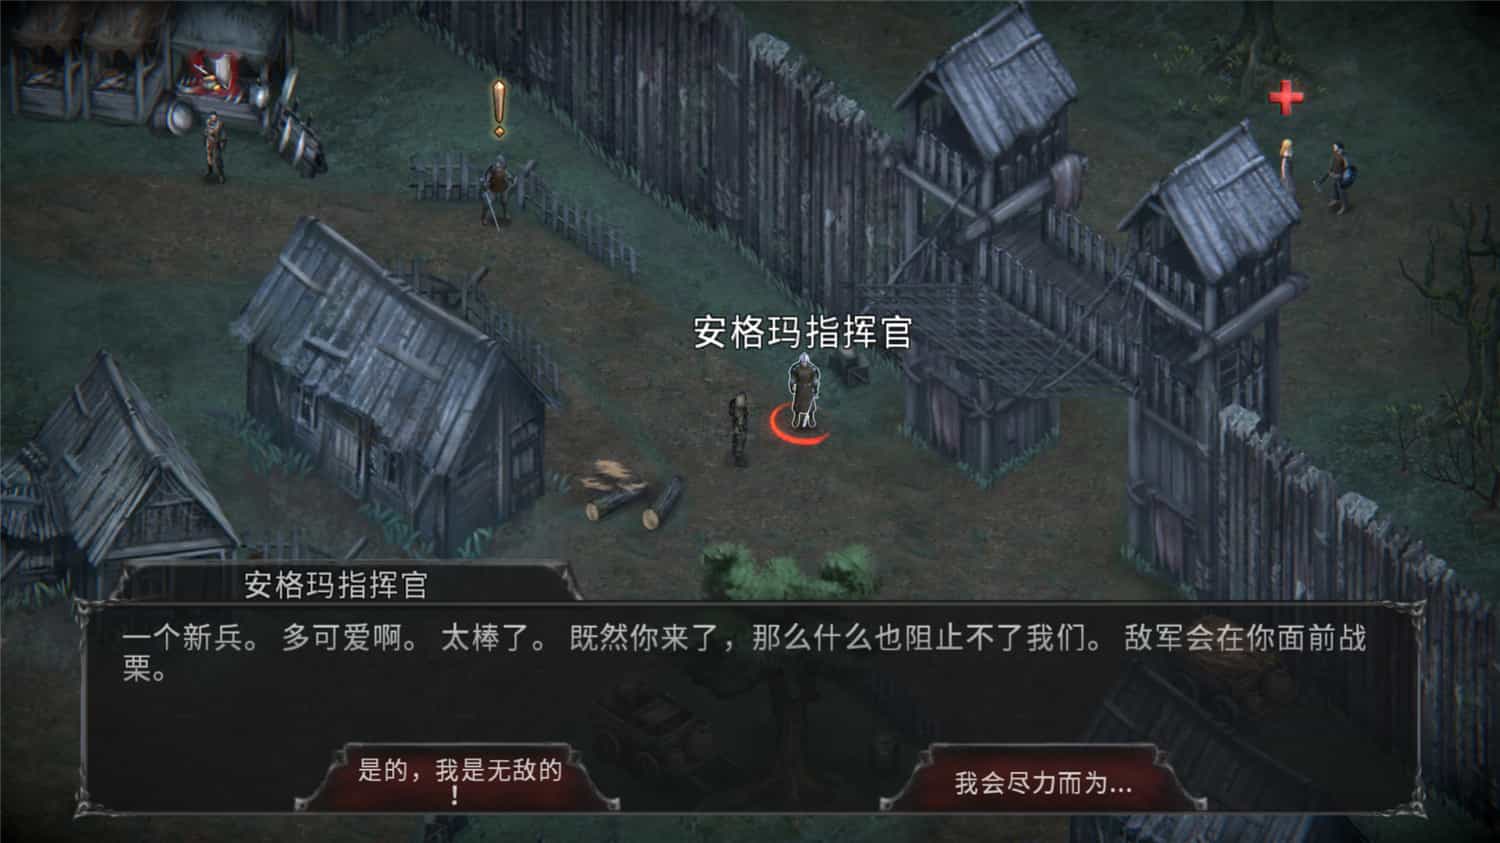 吸血鬼之殇 起源 Vampire's Fall  Origins   v1.6.14+ 中文网盘下载